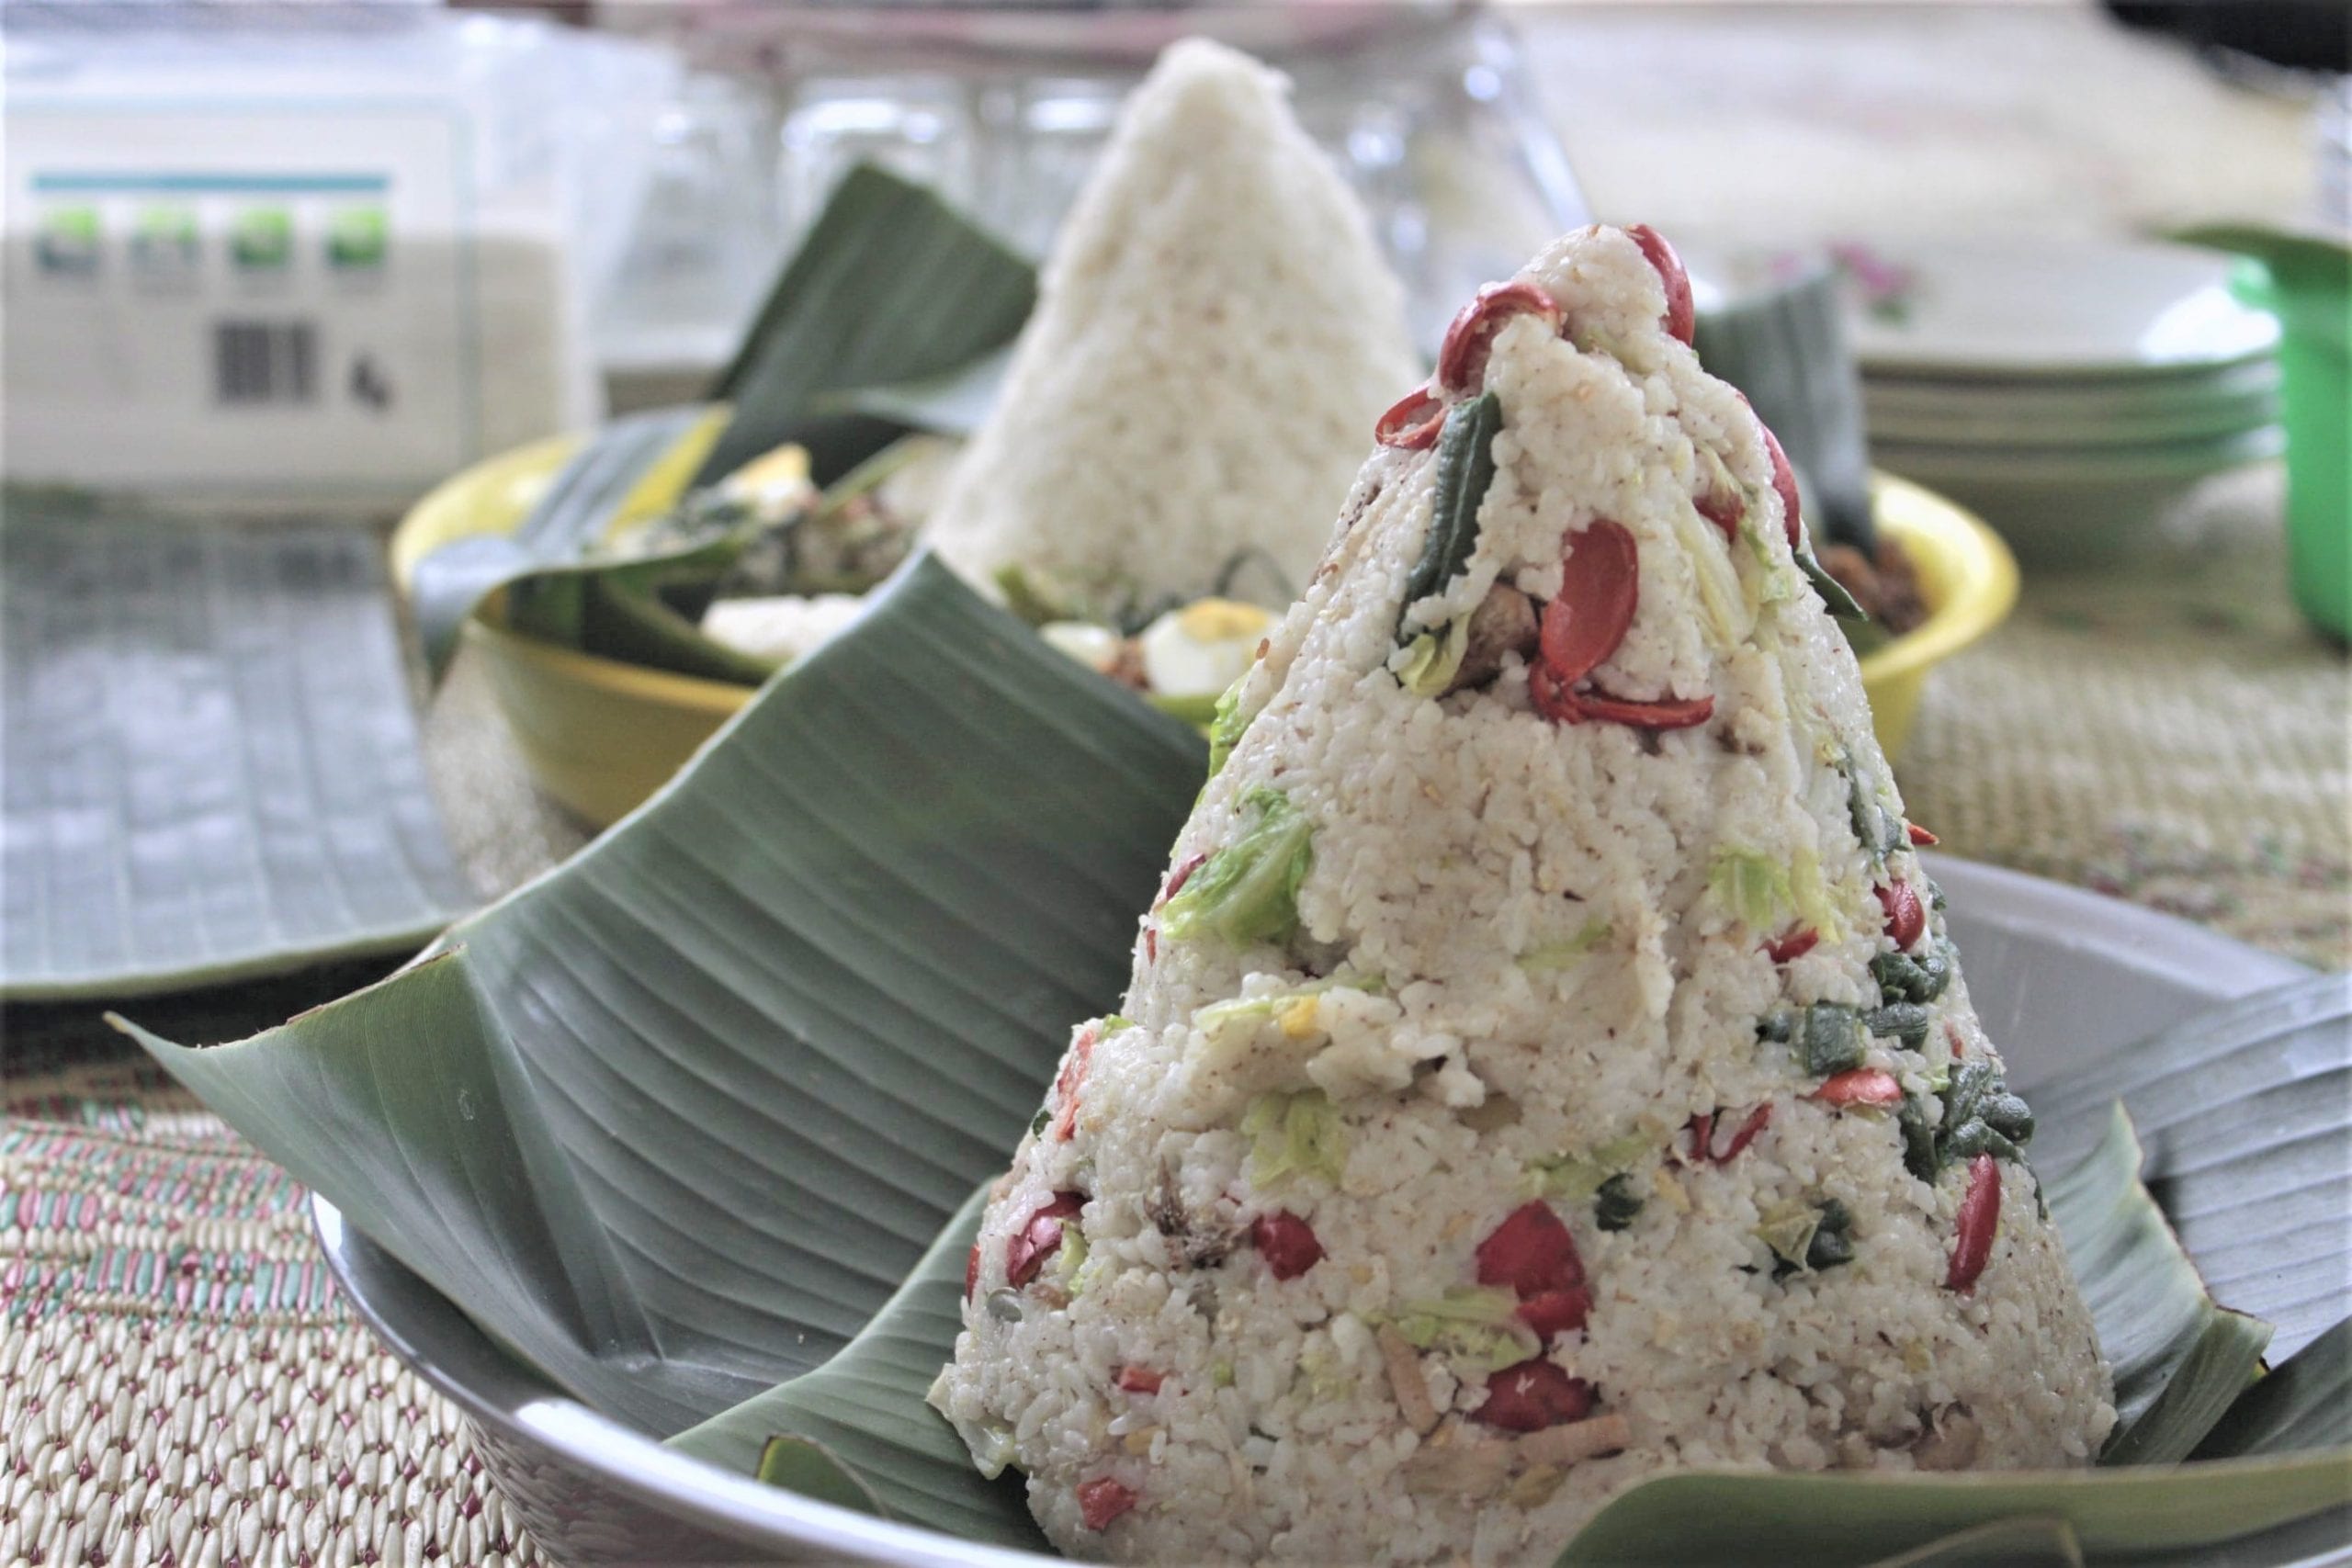 Tumpeng yang merupakan hidangan utama pelaksanaan acara Wiwitan. Tumpeng ini terbuat dari nasi megono berisi parutan kelapa, mlinjo, dan sayur.